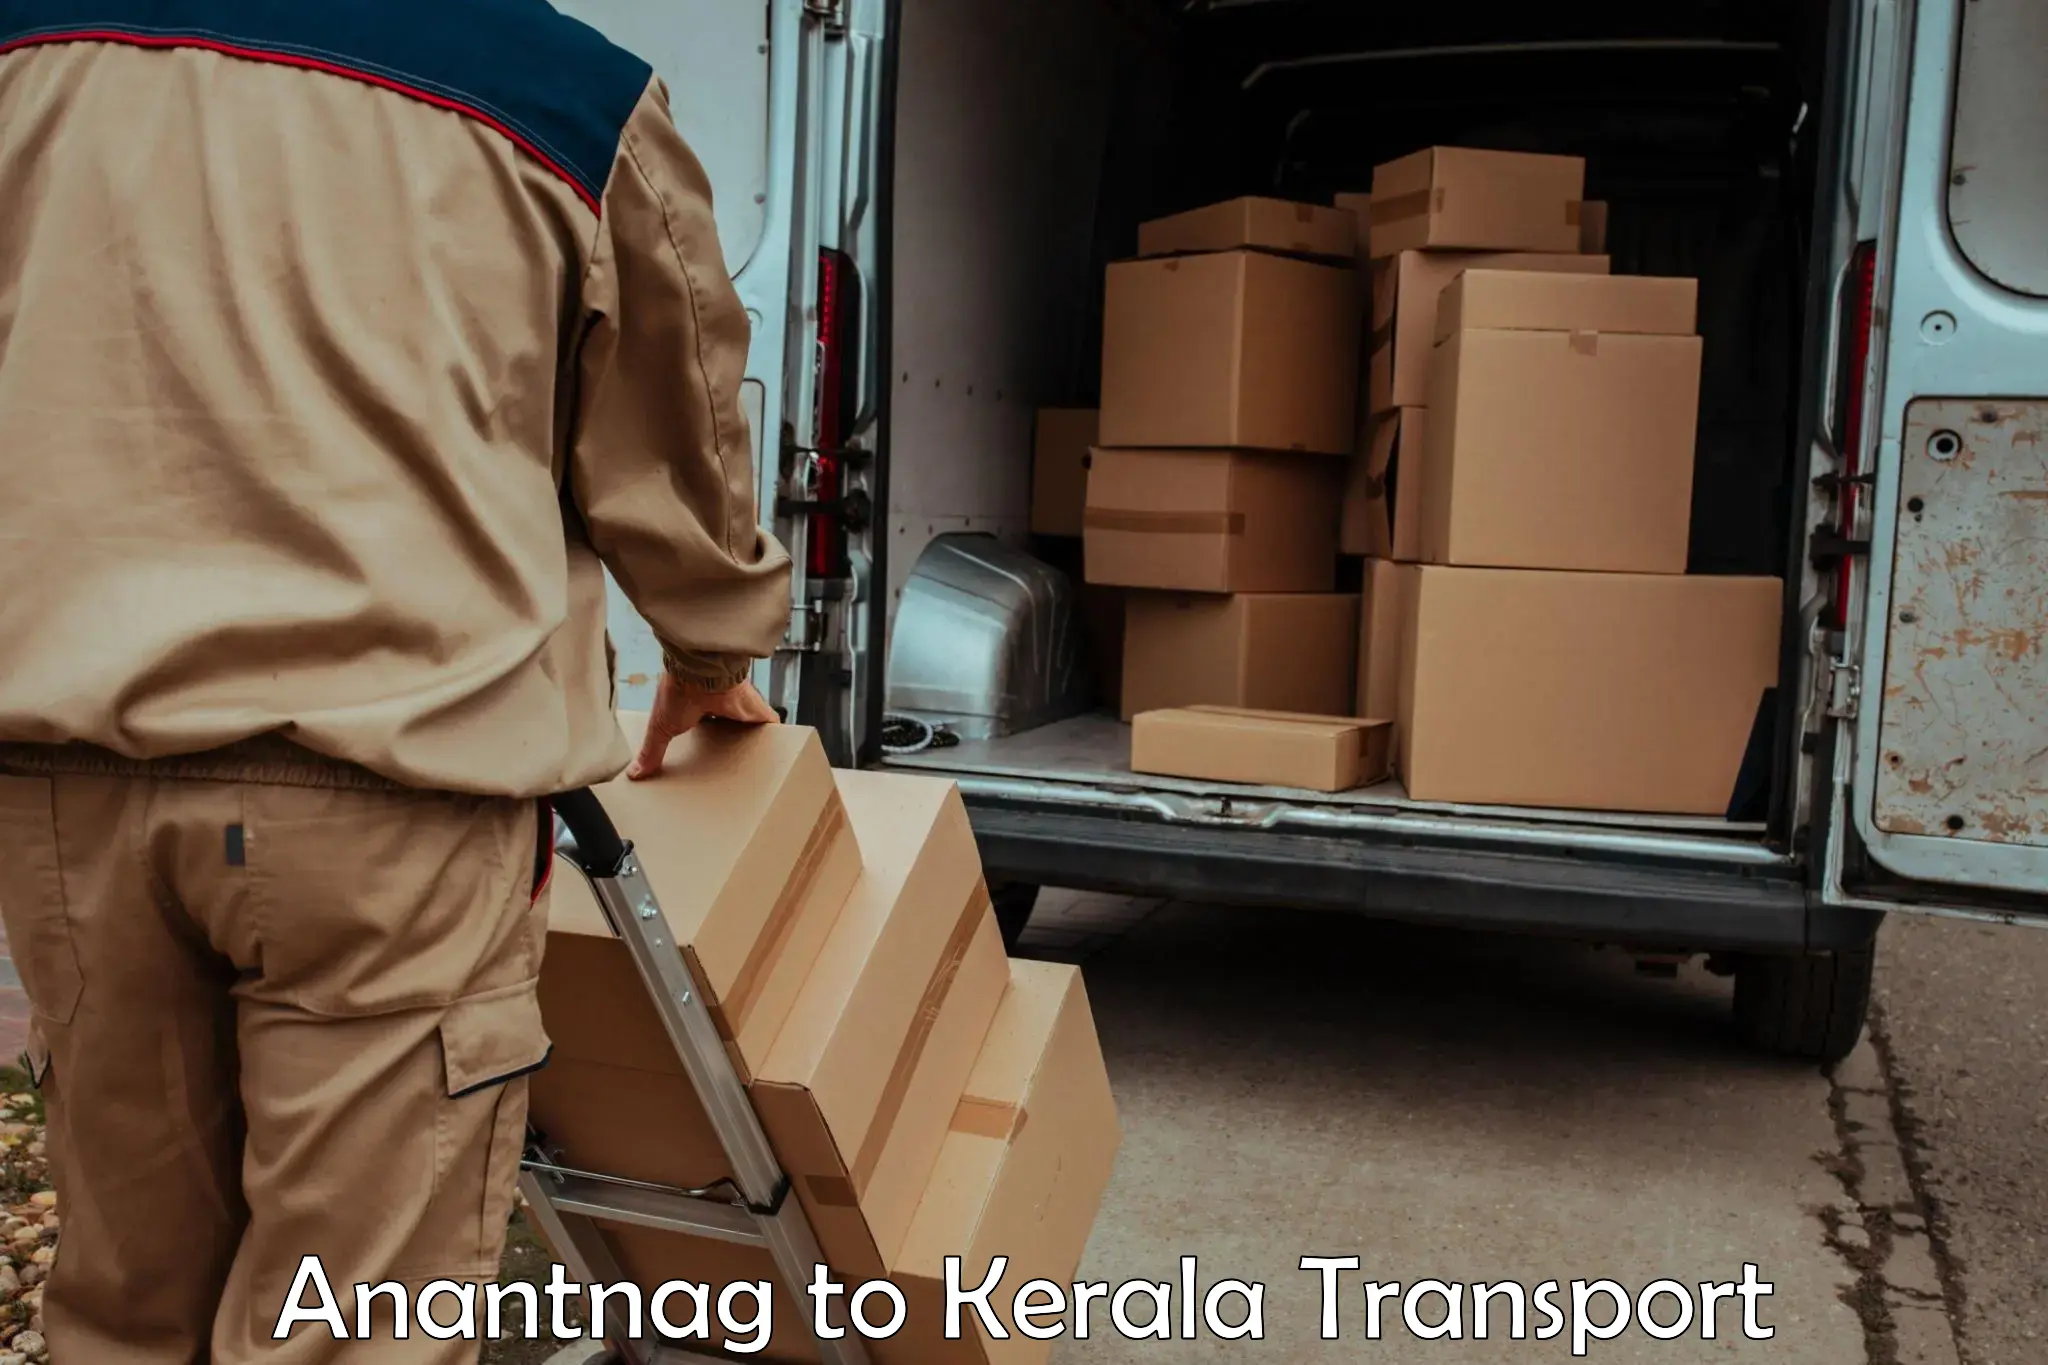 Commercial transport service Anantnag to Mavelikara